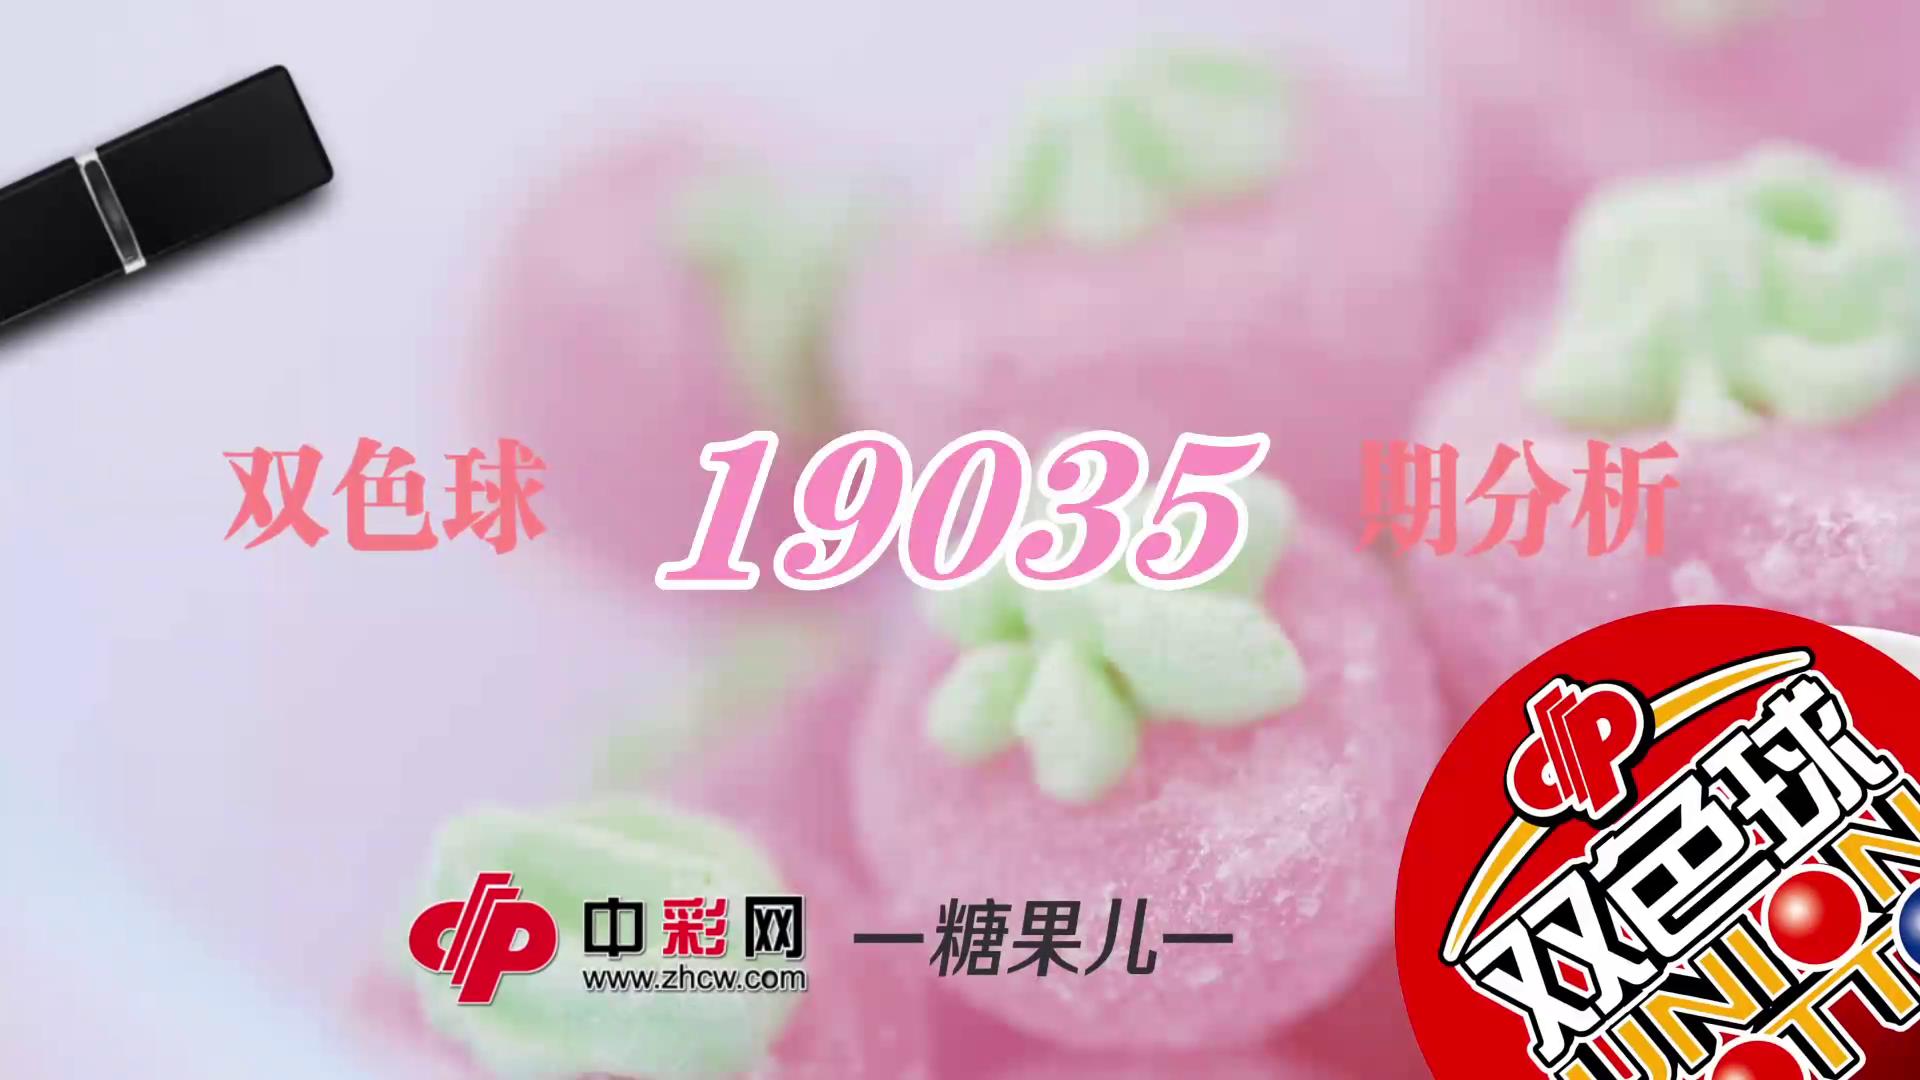 【中彩视频】糖果儿双色球第19035期